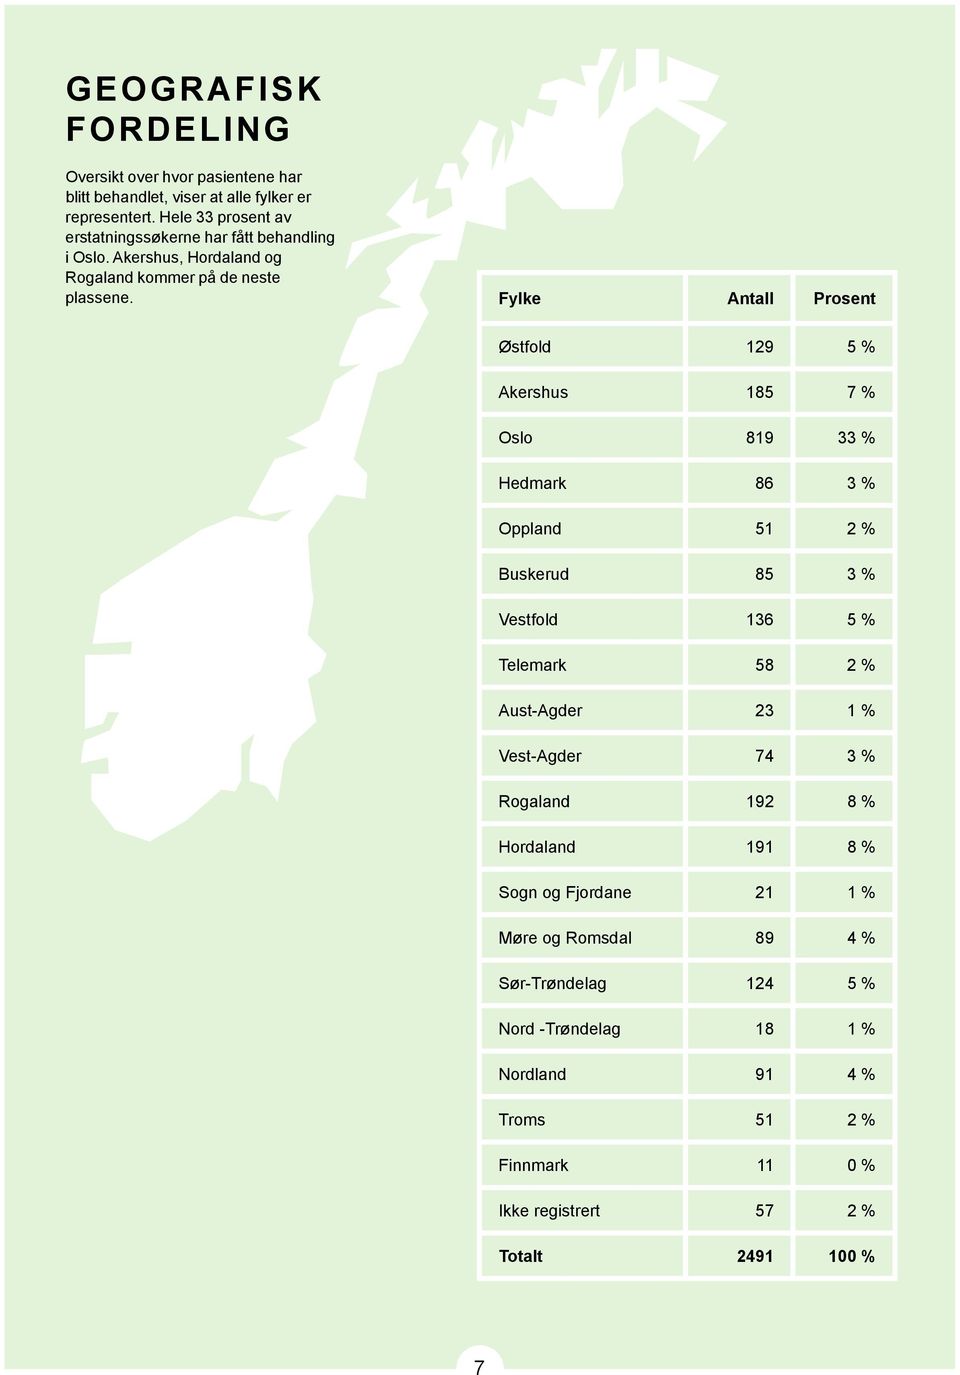 Fylke Antall Prosent Østfold 129 5 % Akershus 185 7 % Oslo 819 33 % Hedmark 86 3 % Oppland 51 2 % Buskerud 85 3 % Vestfold 136 5 % Telemark 58 2 % Aust-Agder